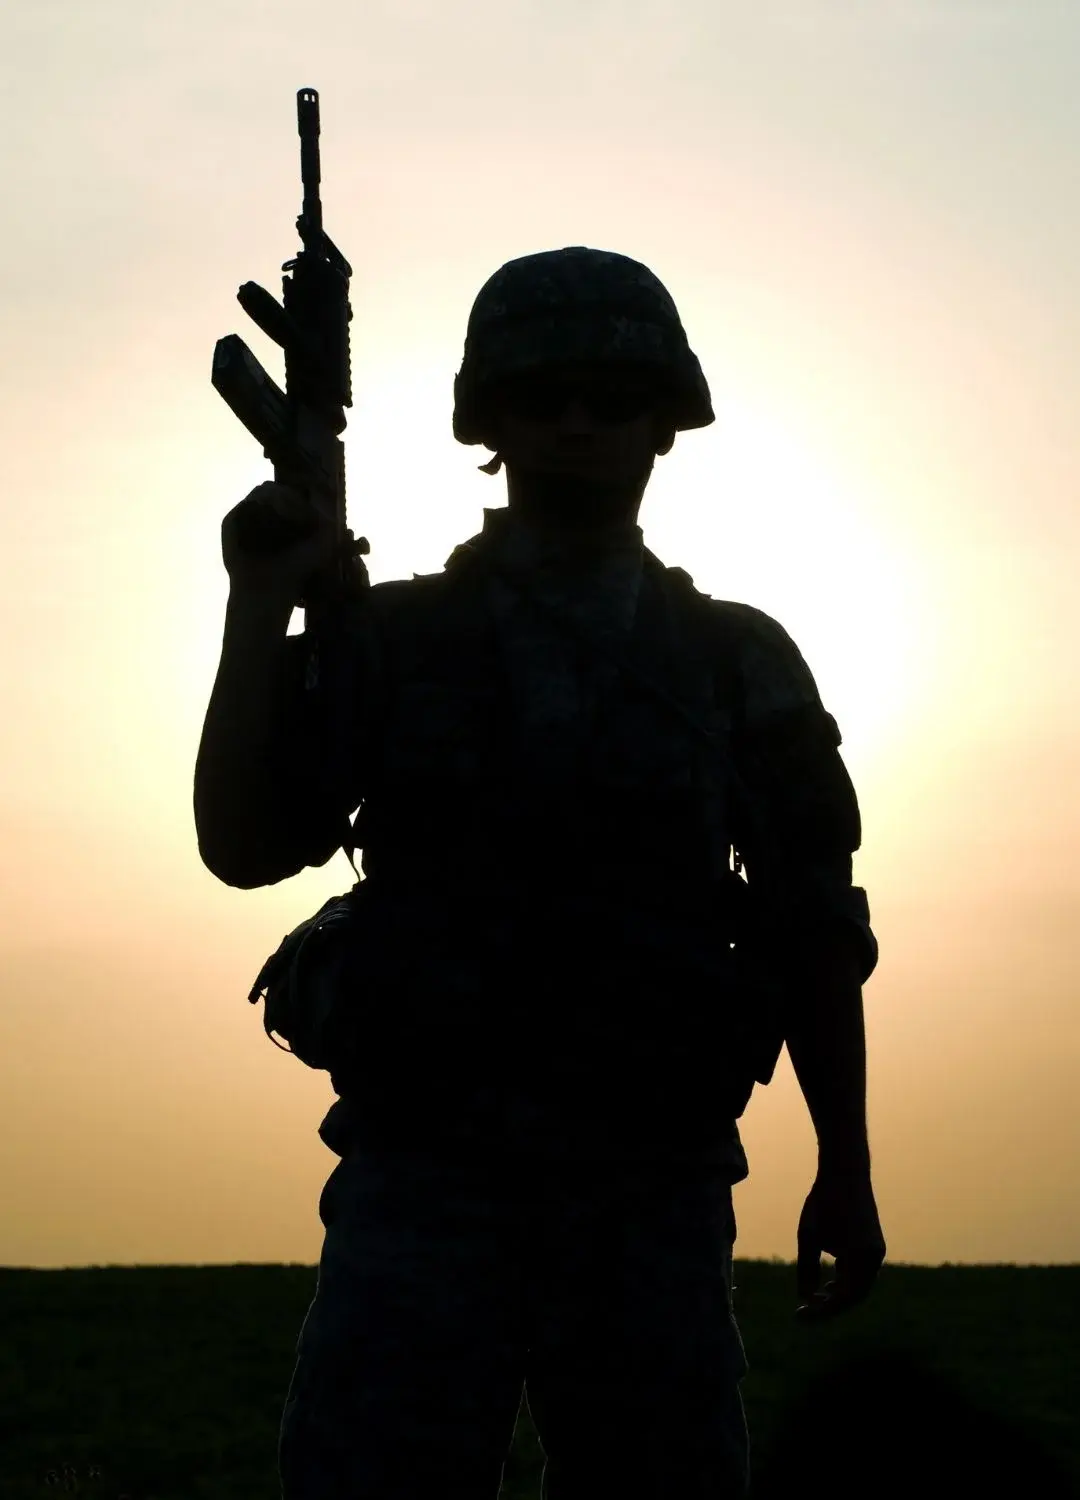 Sylwetka uzbrojonego żołnierza na tle zachodu słońca